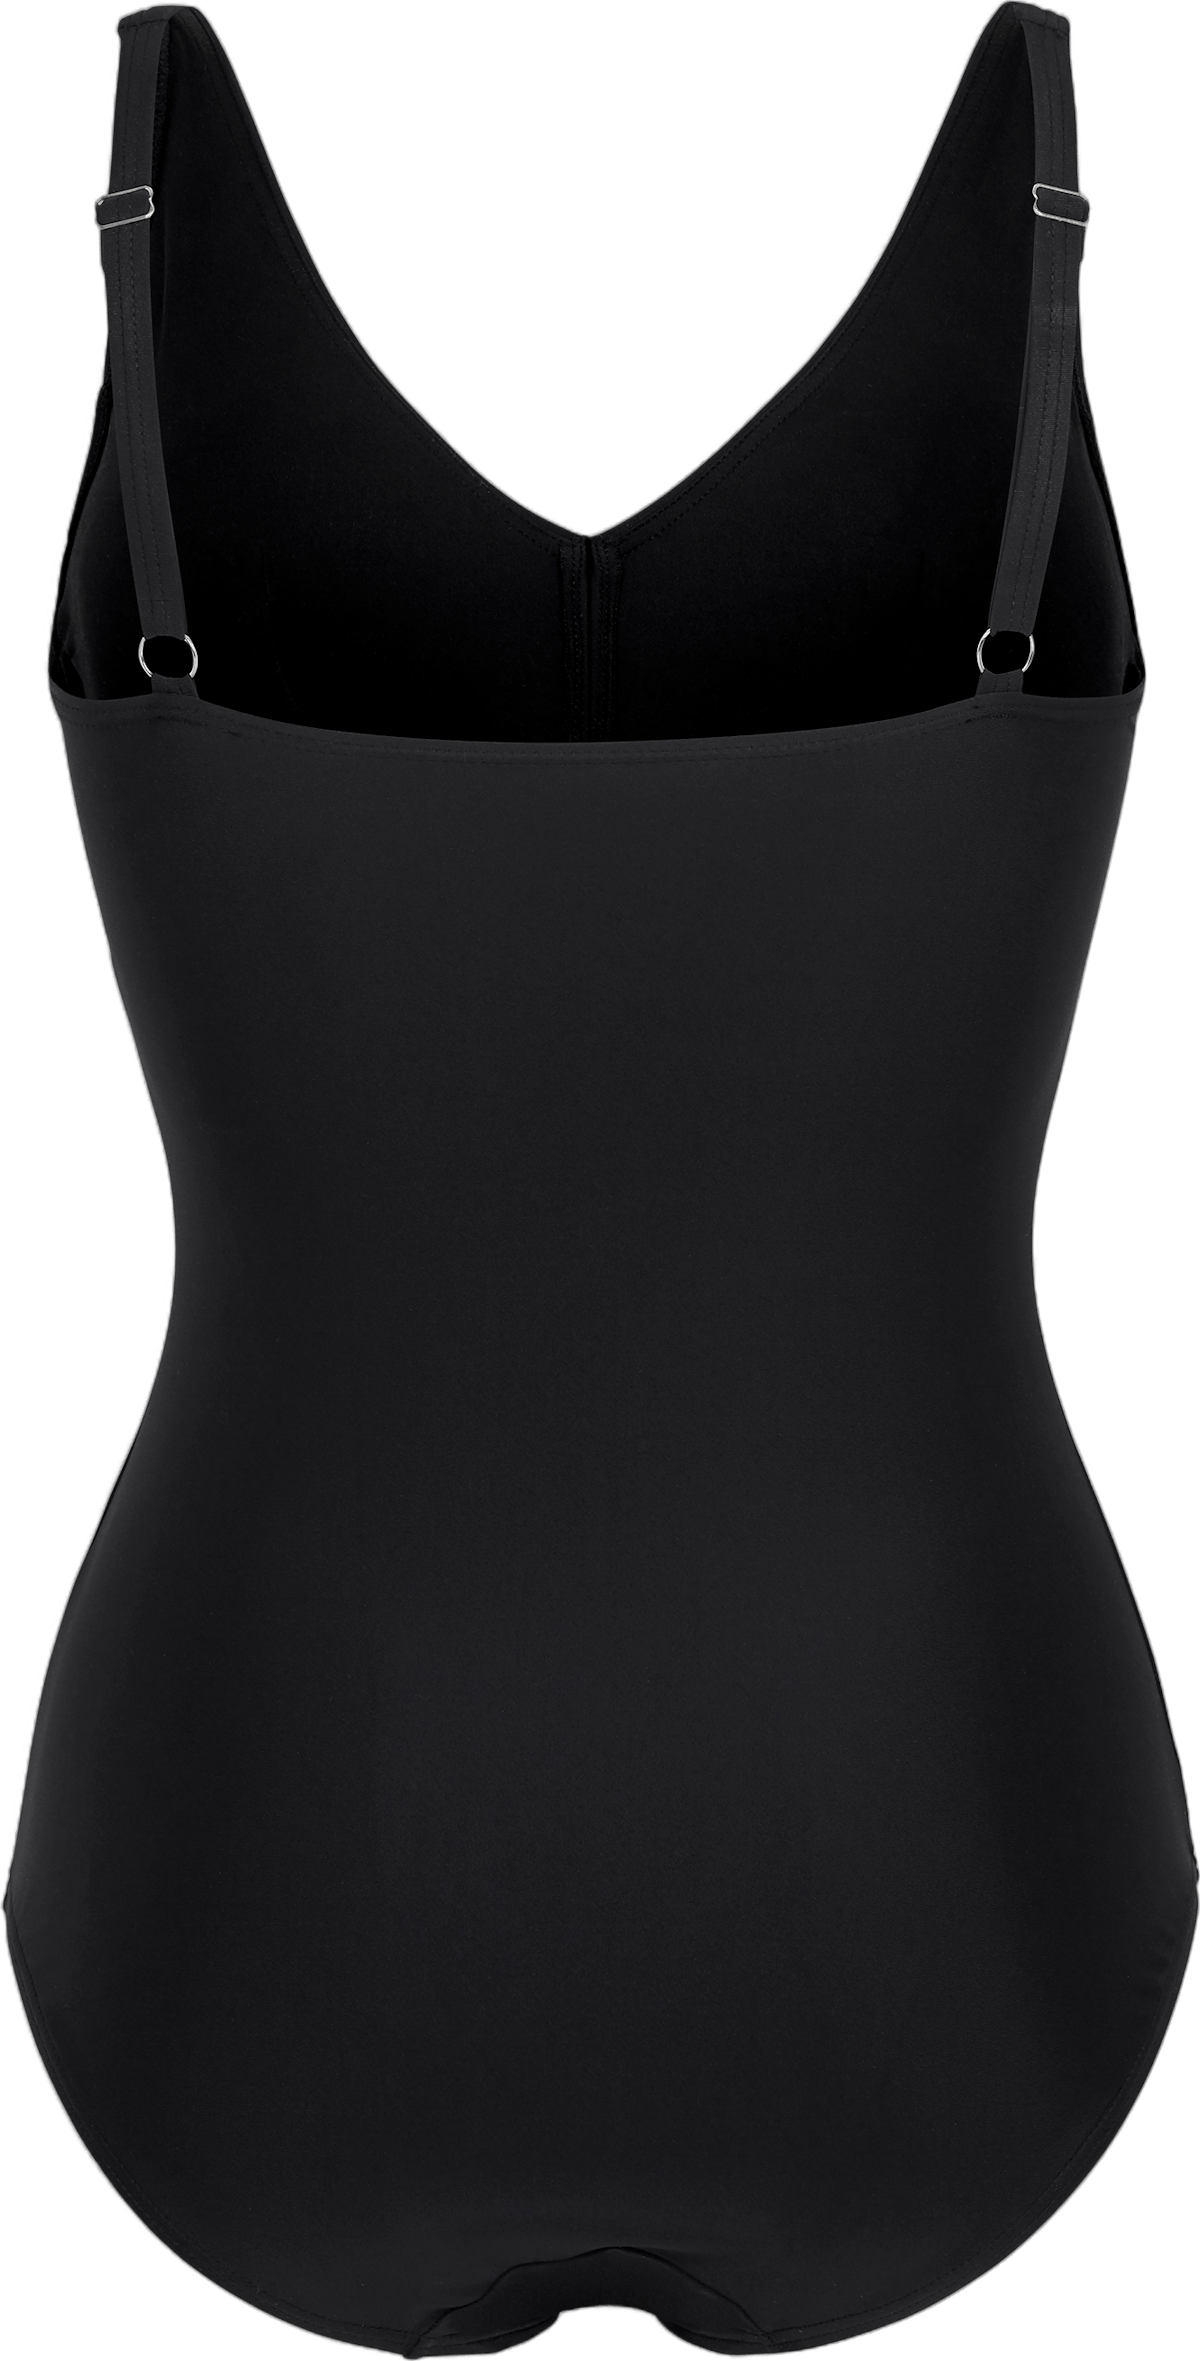 Alanya Kanter's Swimsuit Black